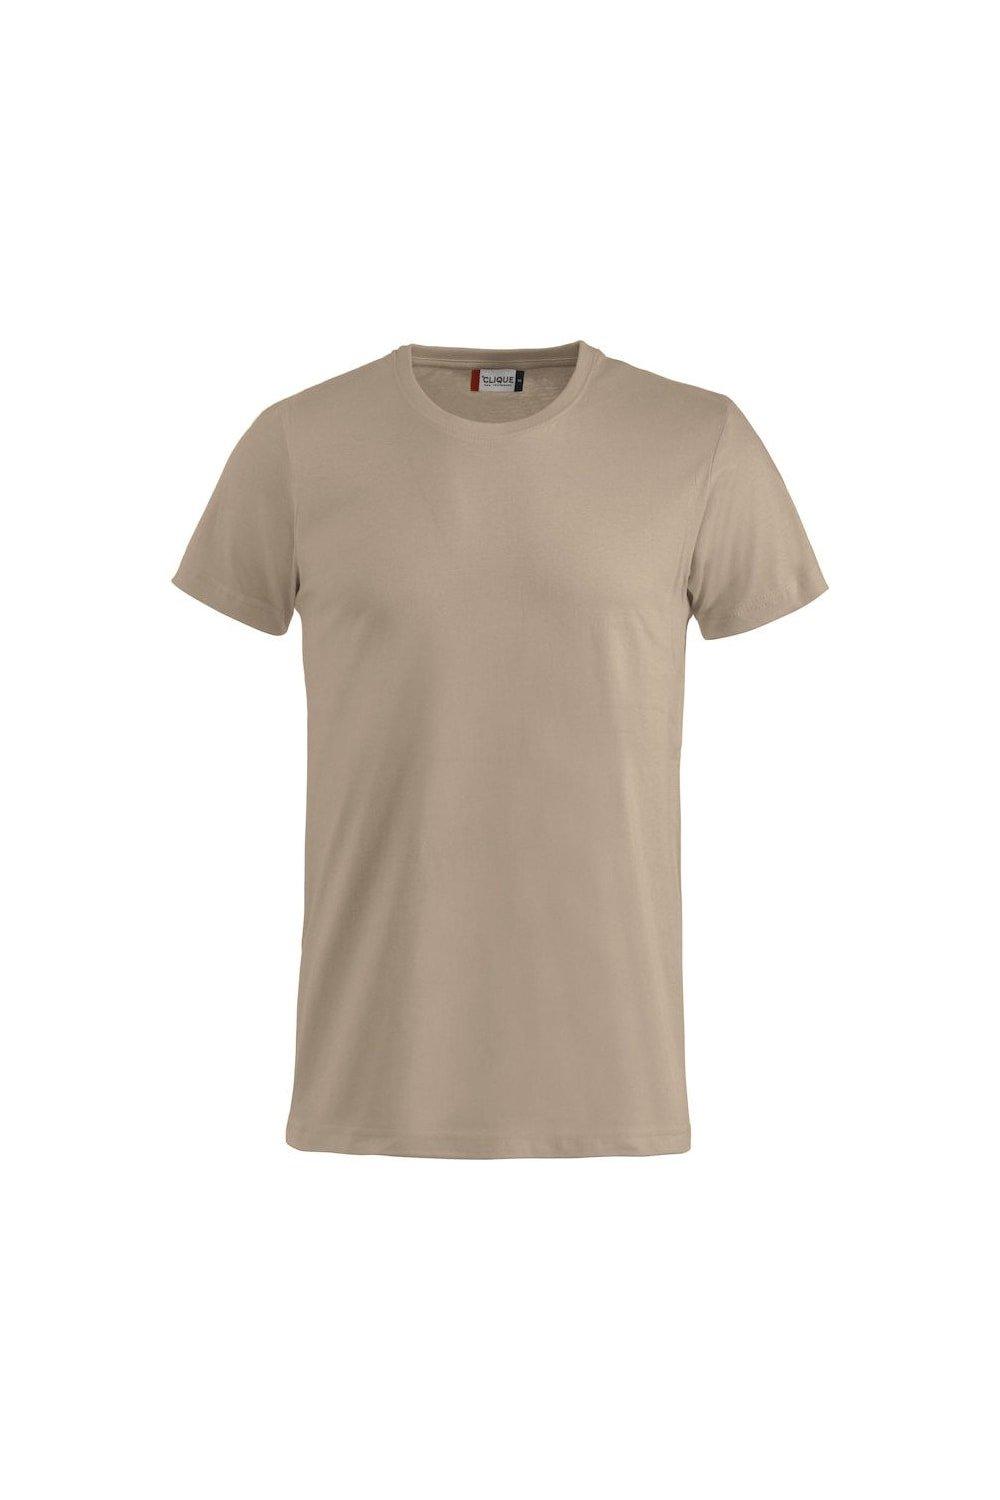 Базовая футболка Clique, коричневый базовая футболка коричневый